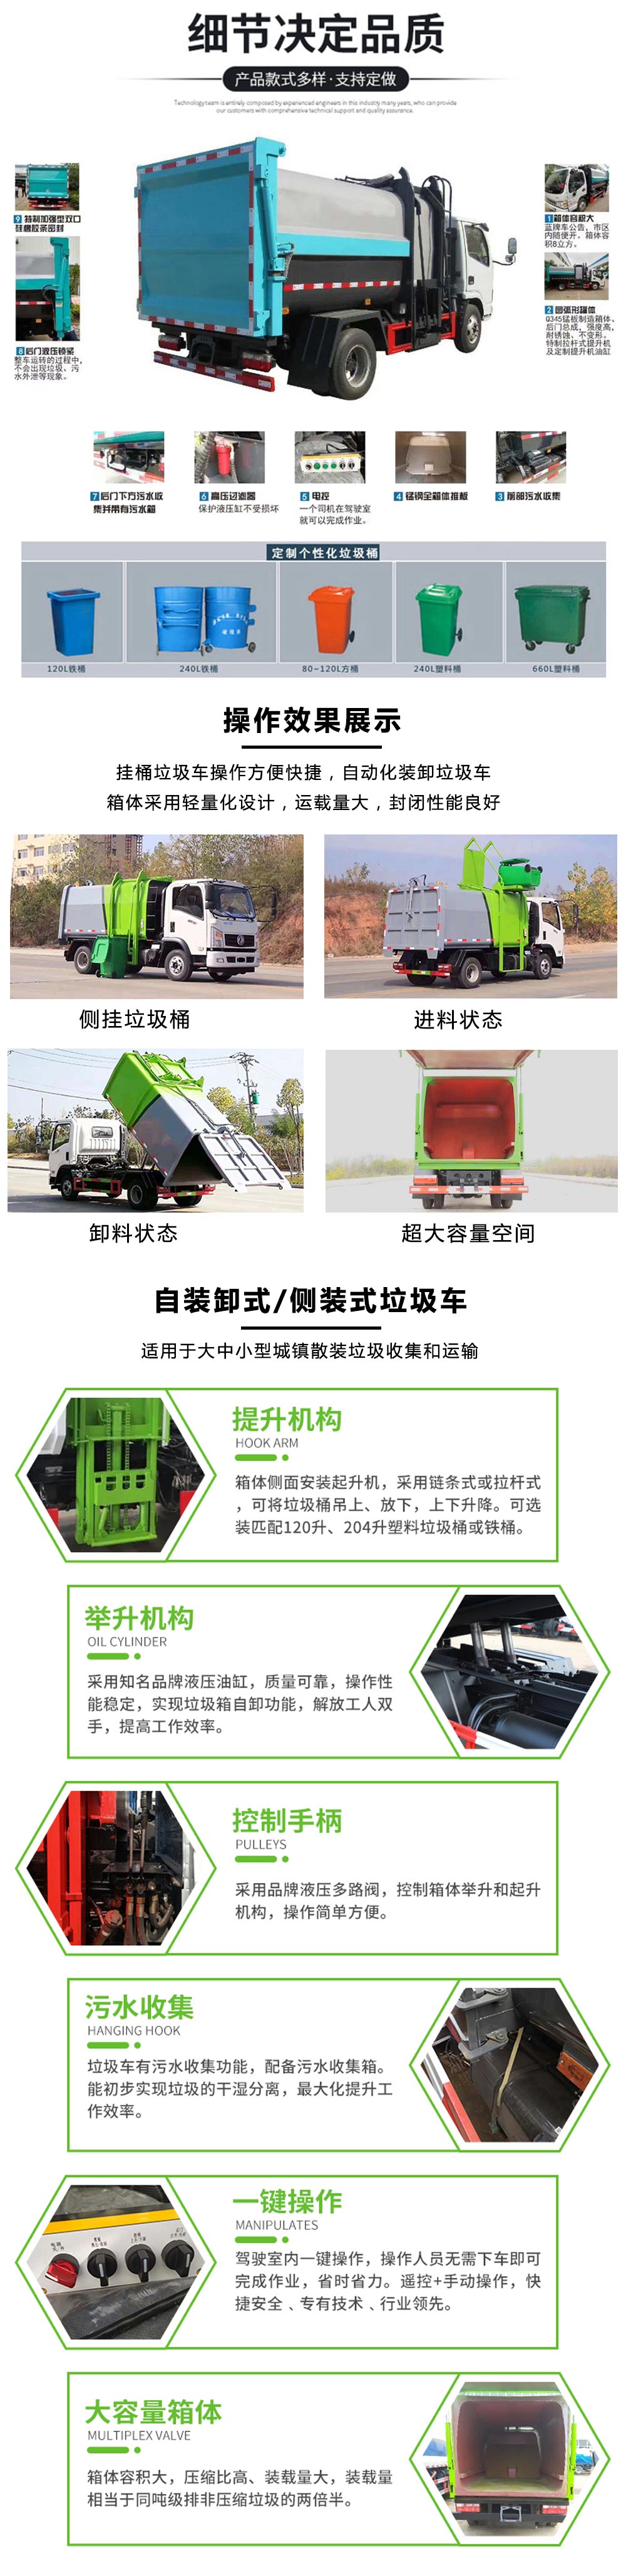 國六福田祥菱 3方 挂桶垃圾車(chē)